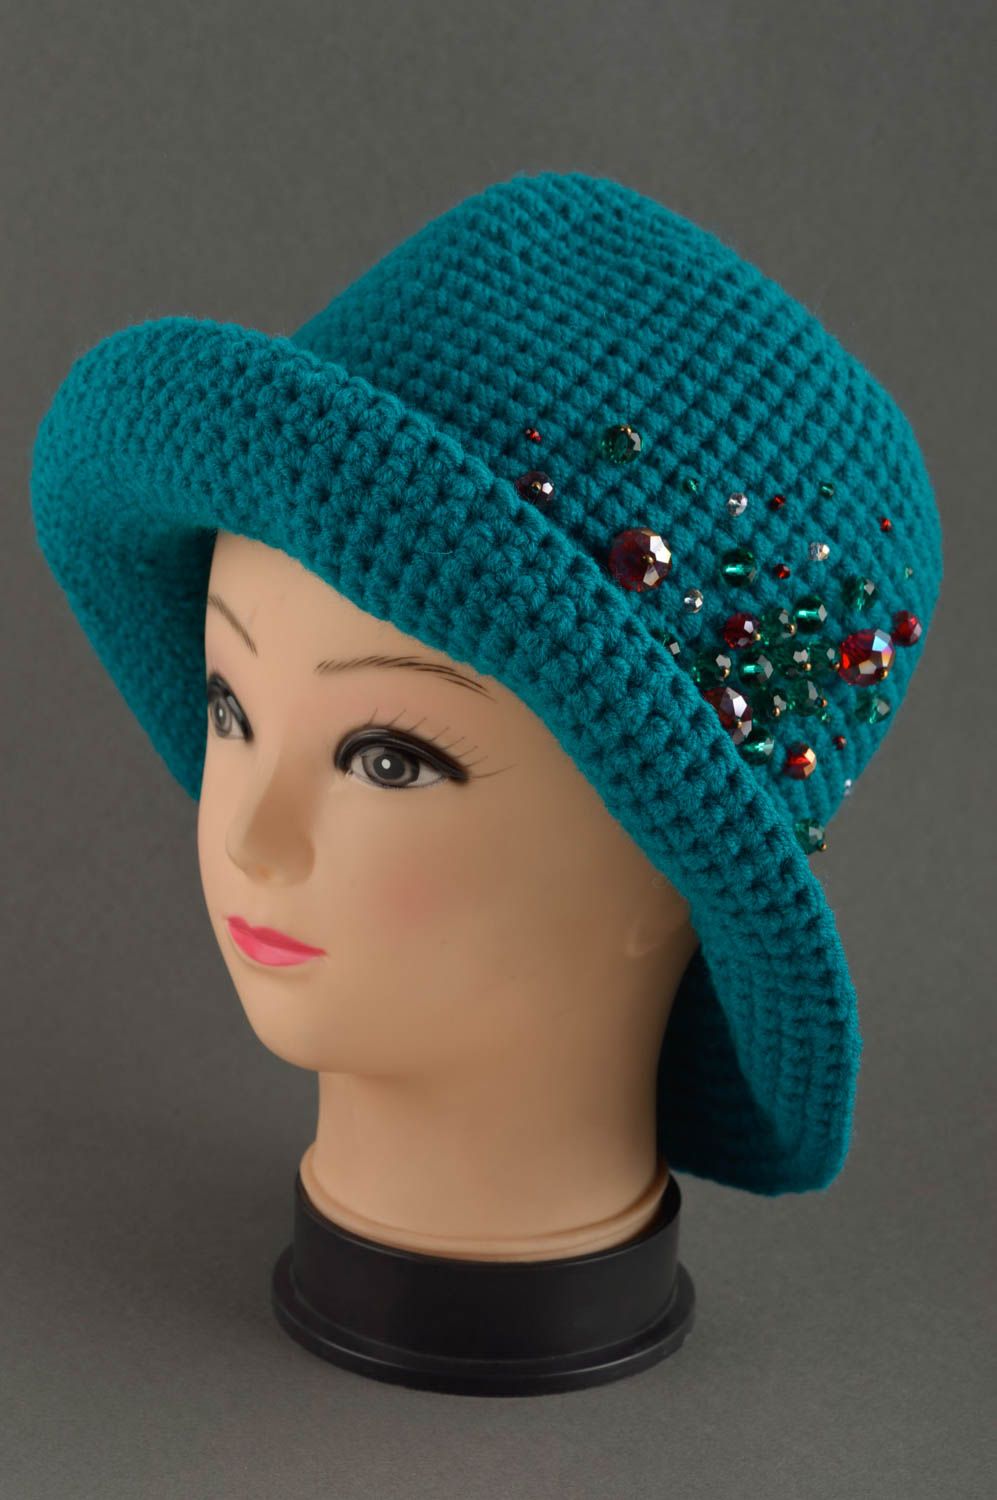 Handmade hat crocheted hat woolen hat for women gift ideas unusual headwear photo 1